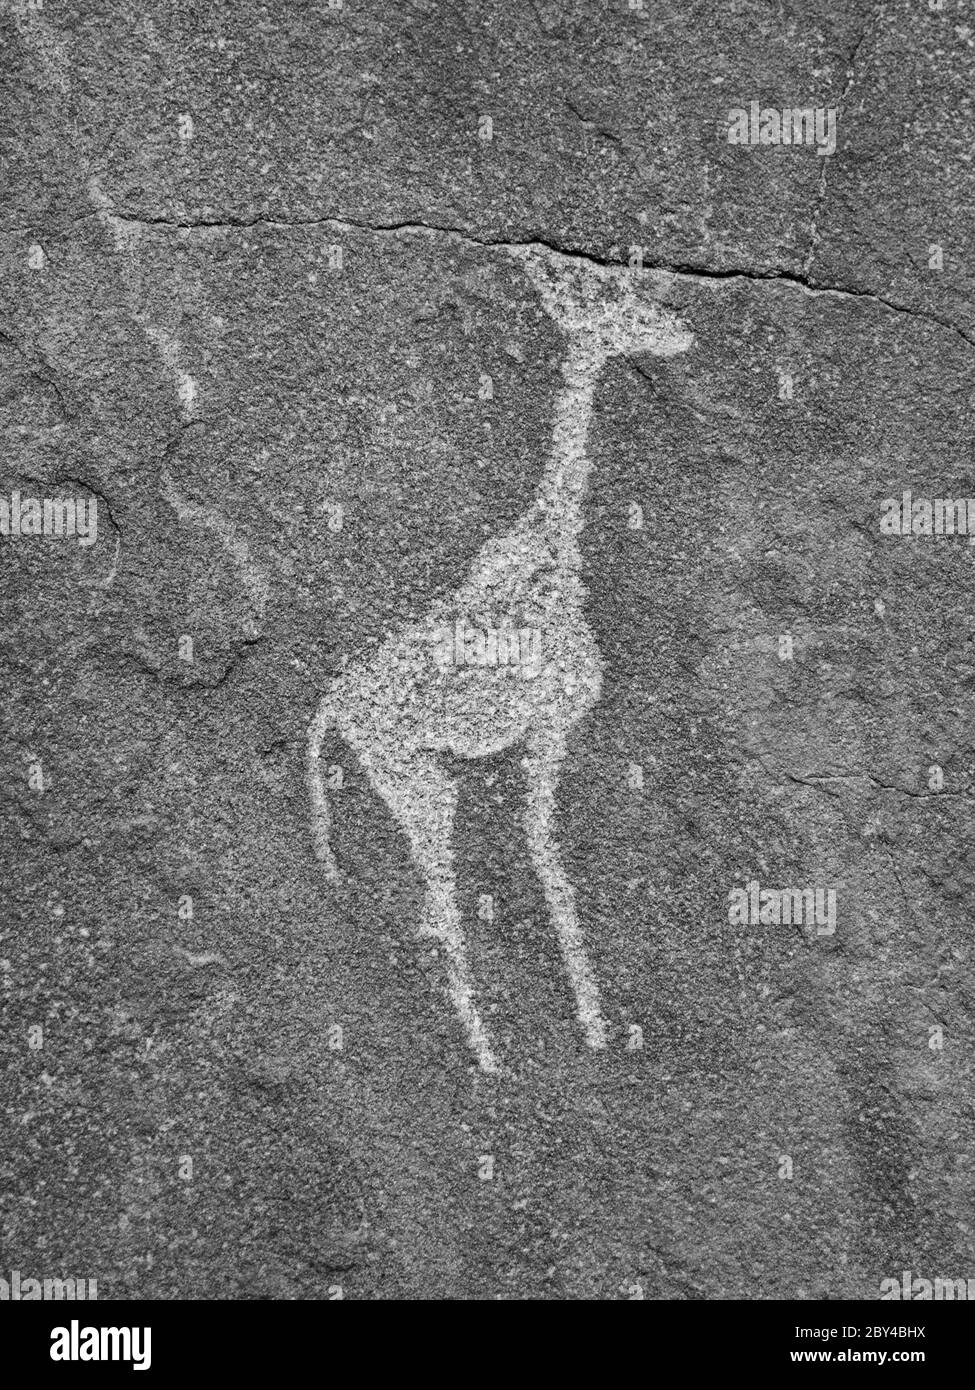 Incisione rupestre preistorica di Bushman - Giraffe, Twyfelfontein, Namibia. Immagine in bianco e nero. Foto Stock